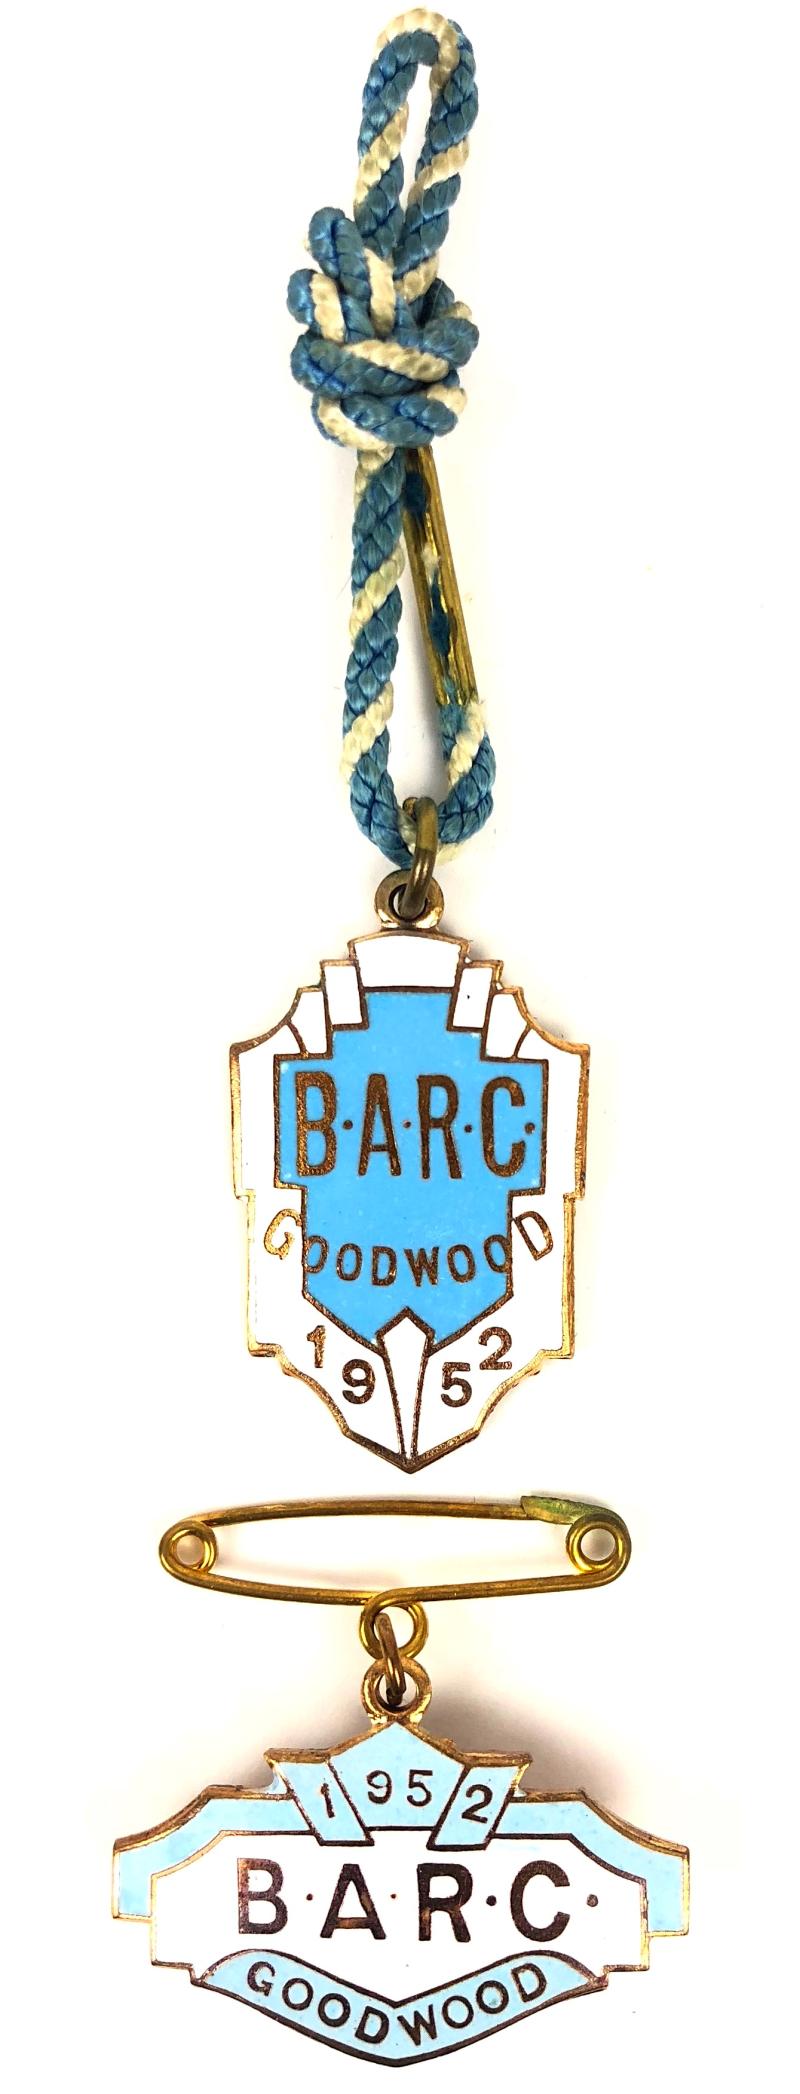 1952 Goodwood BARC membership badge & guest